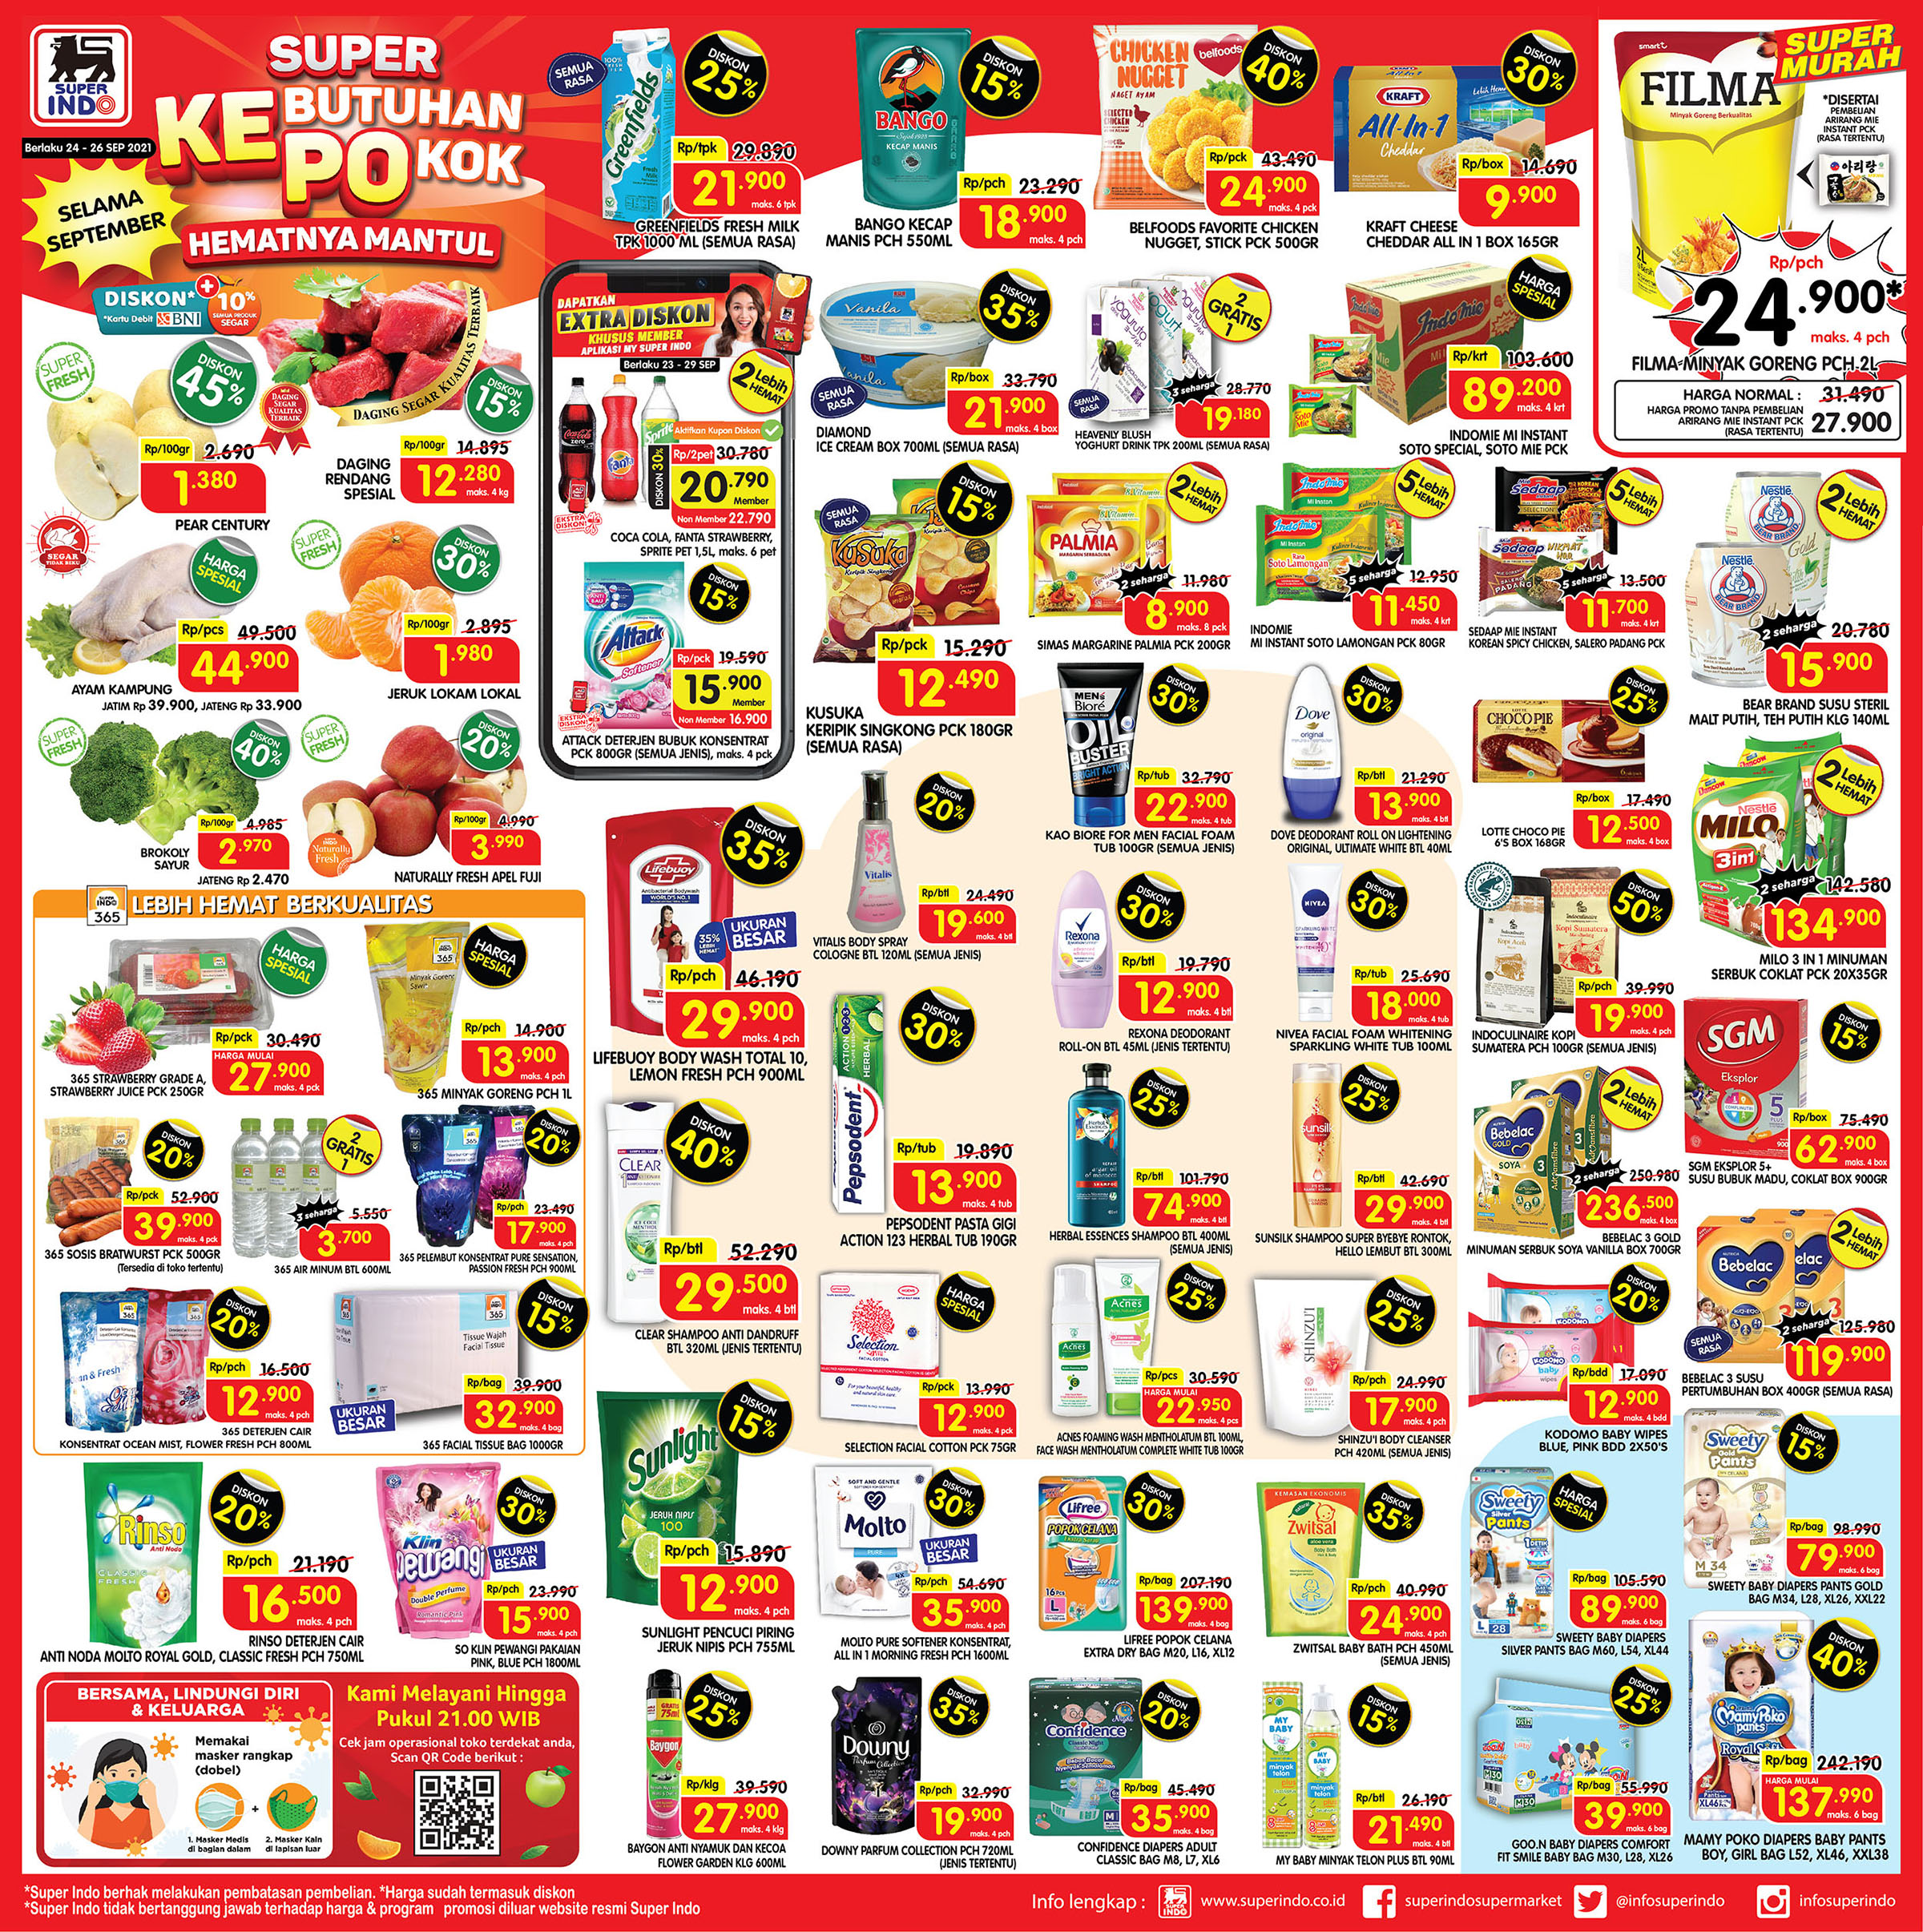 Katalog Promo JSM Super Indo Supermarket Terbaru 24-26 September 2021